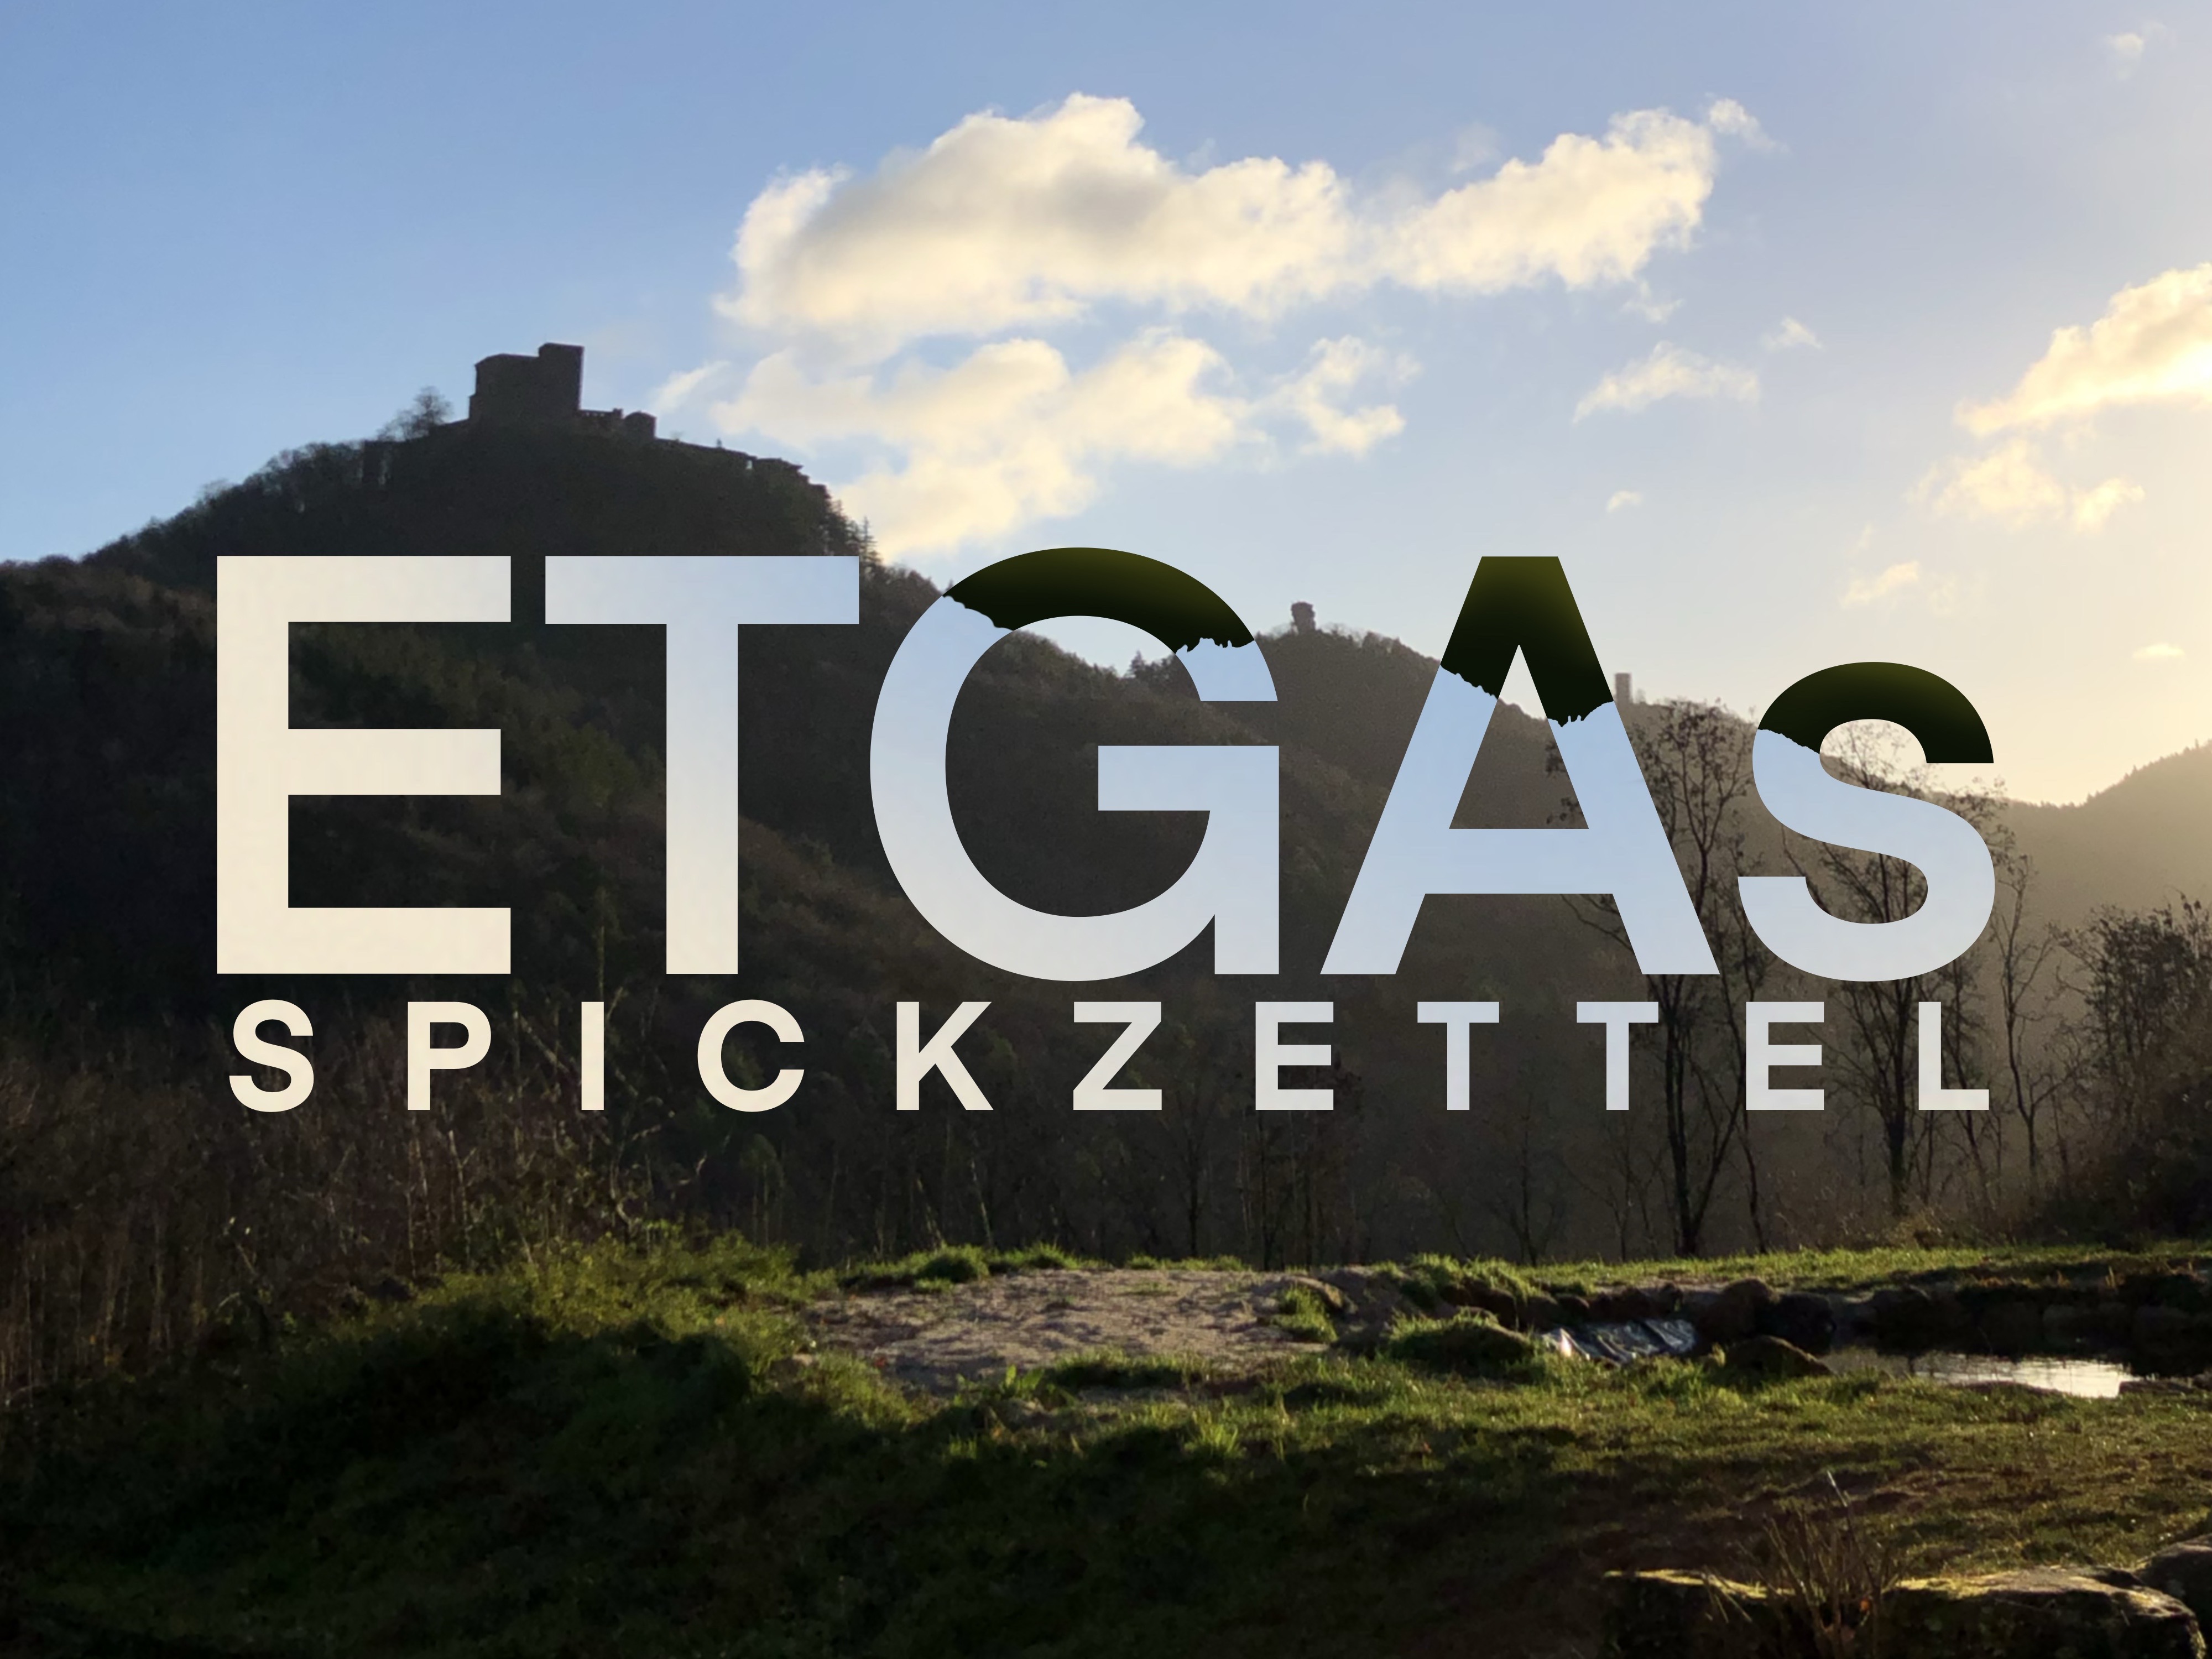 (c) Etgas-spickzettel.de